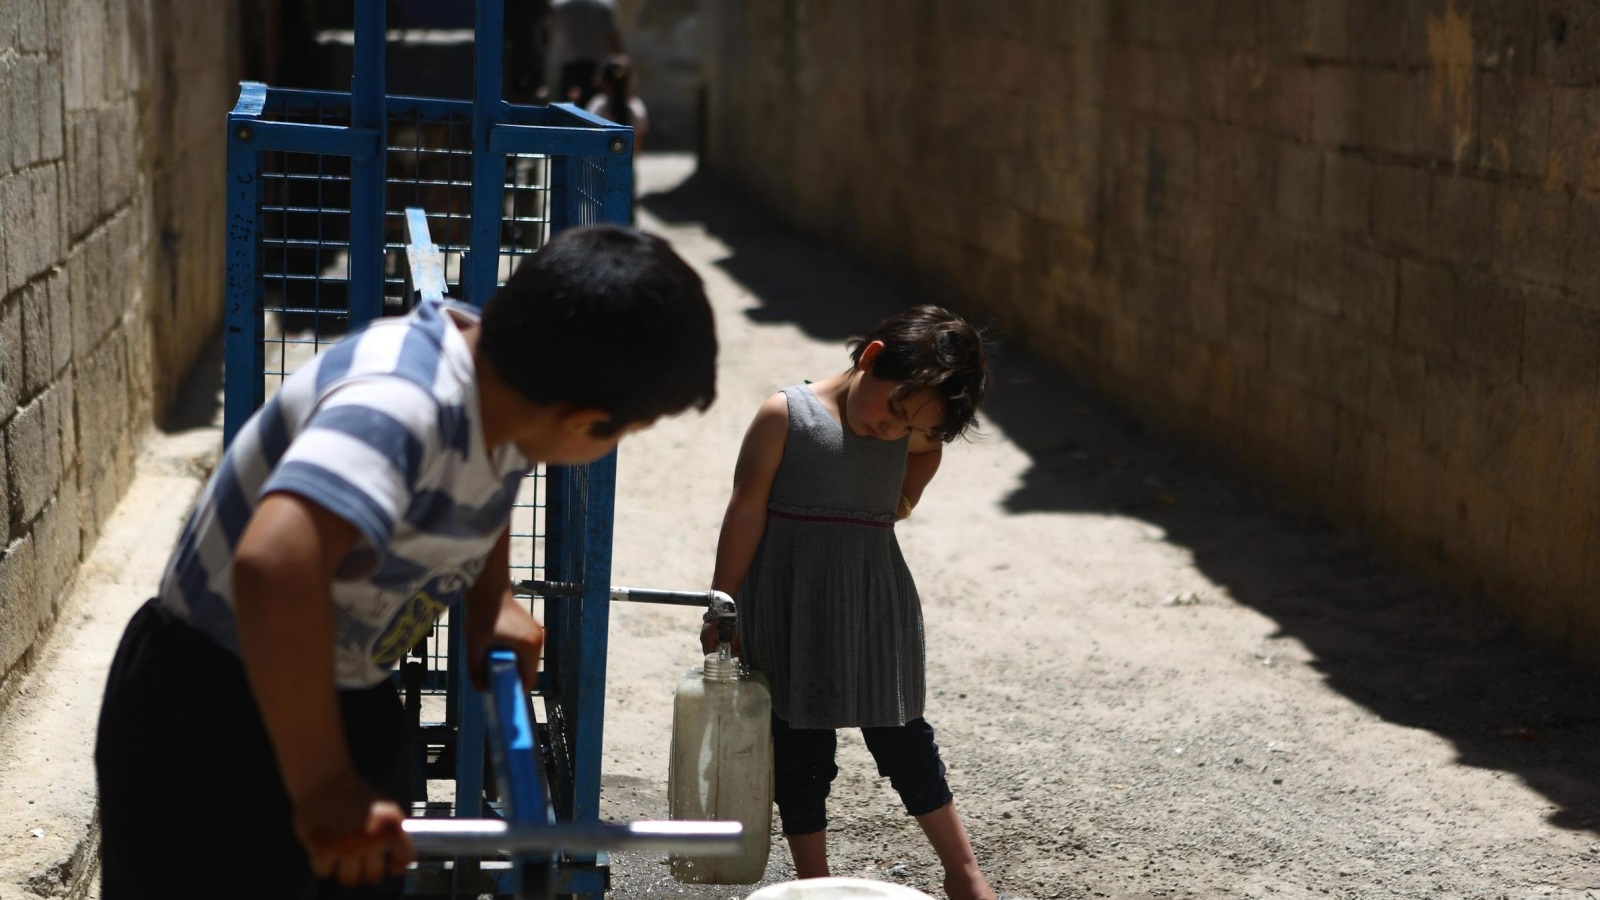 انقطاع المياه جعل الناس في دمشق وريفها يعتمدون على مياه الآبار كما هي الحال في دوما (الأوروبية)